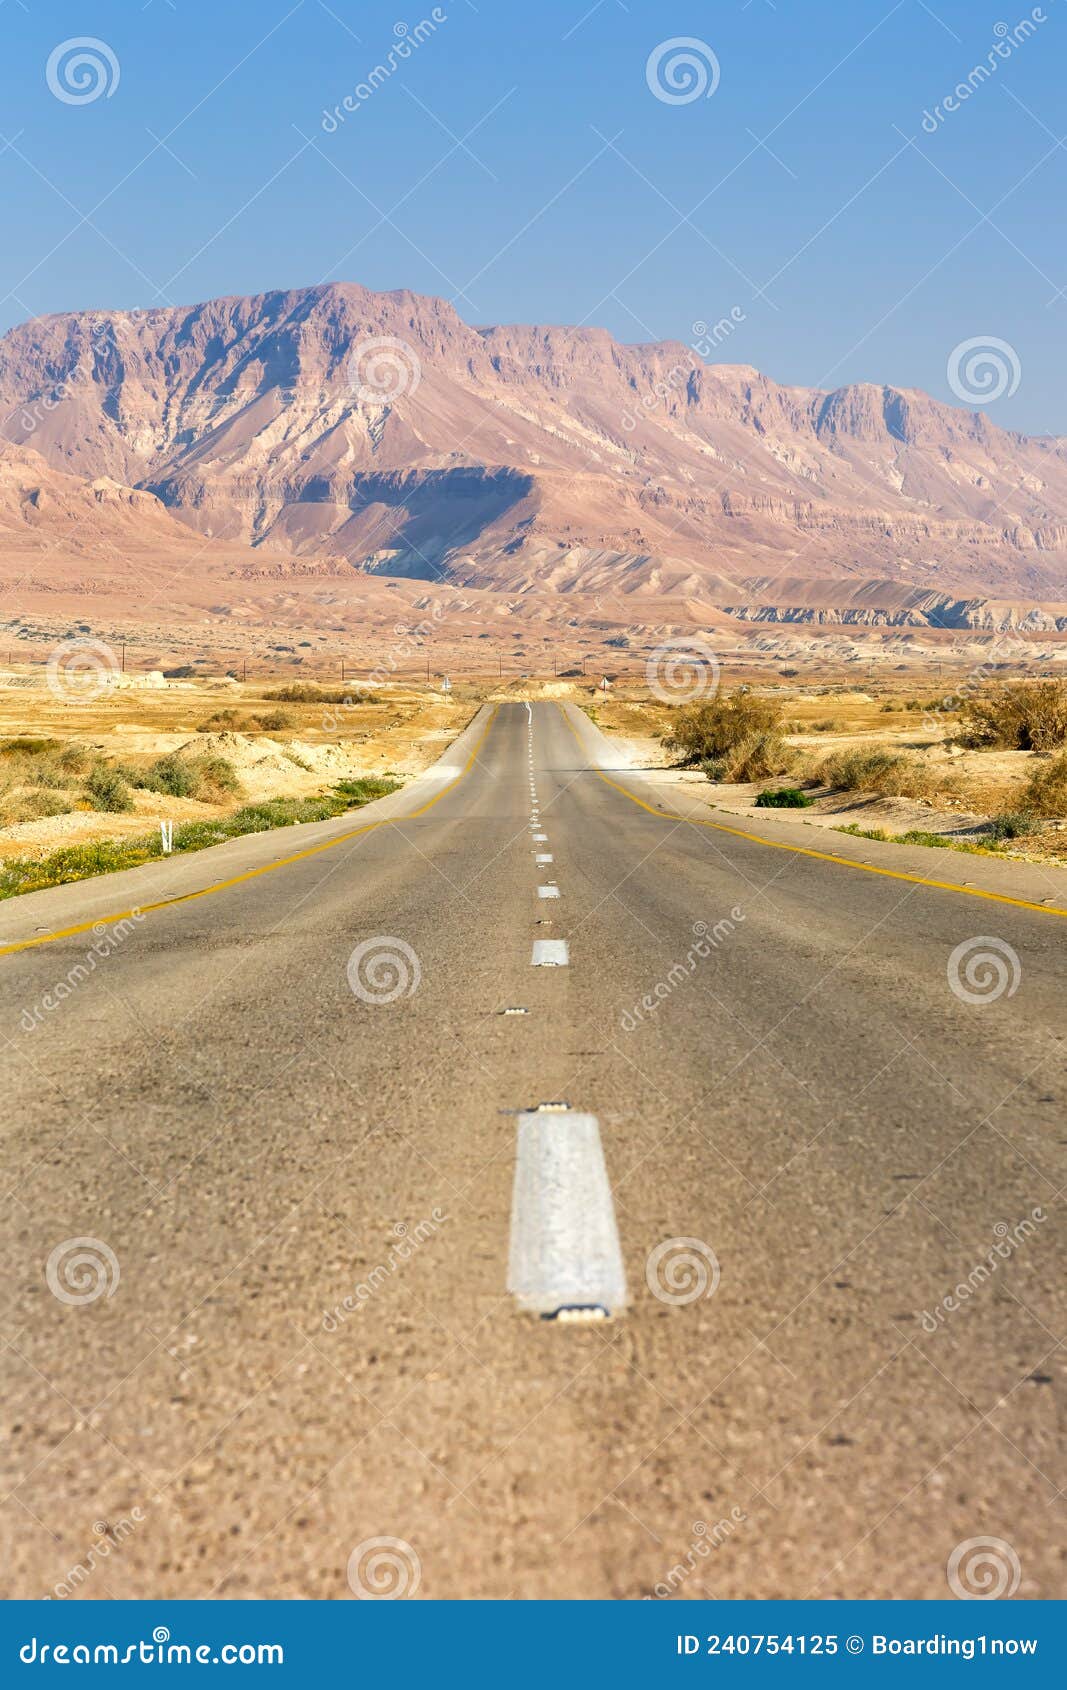 无尽的道路行驶空旷的沙漠景观图式孤远无限的距离